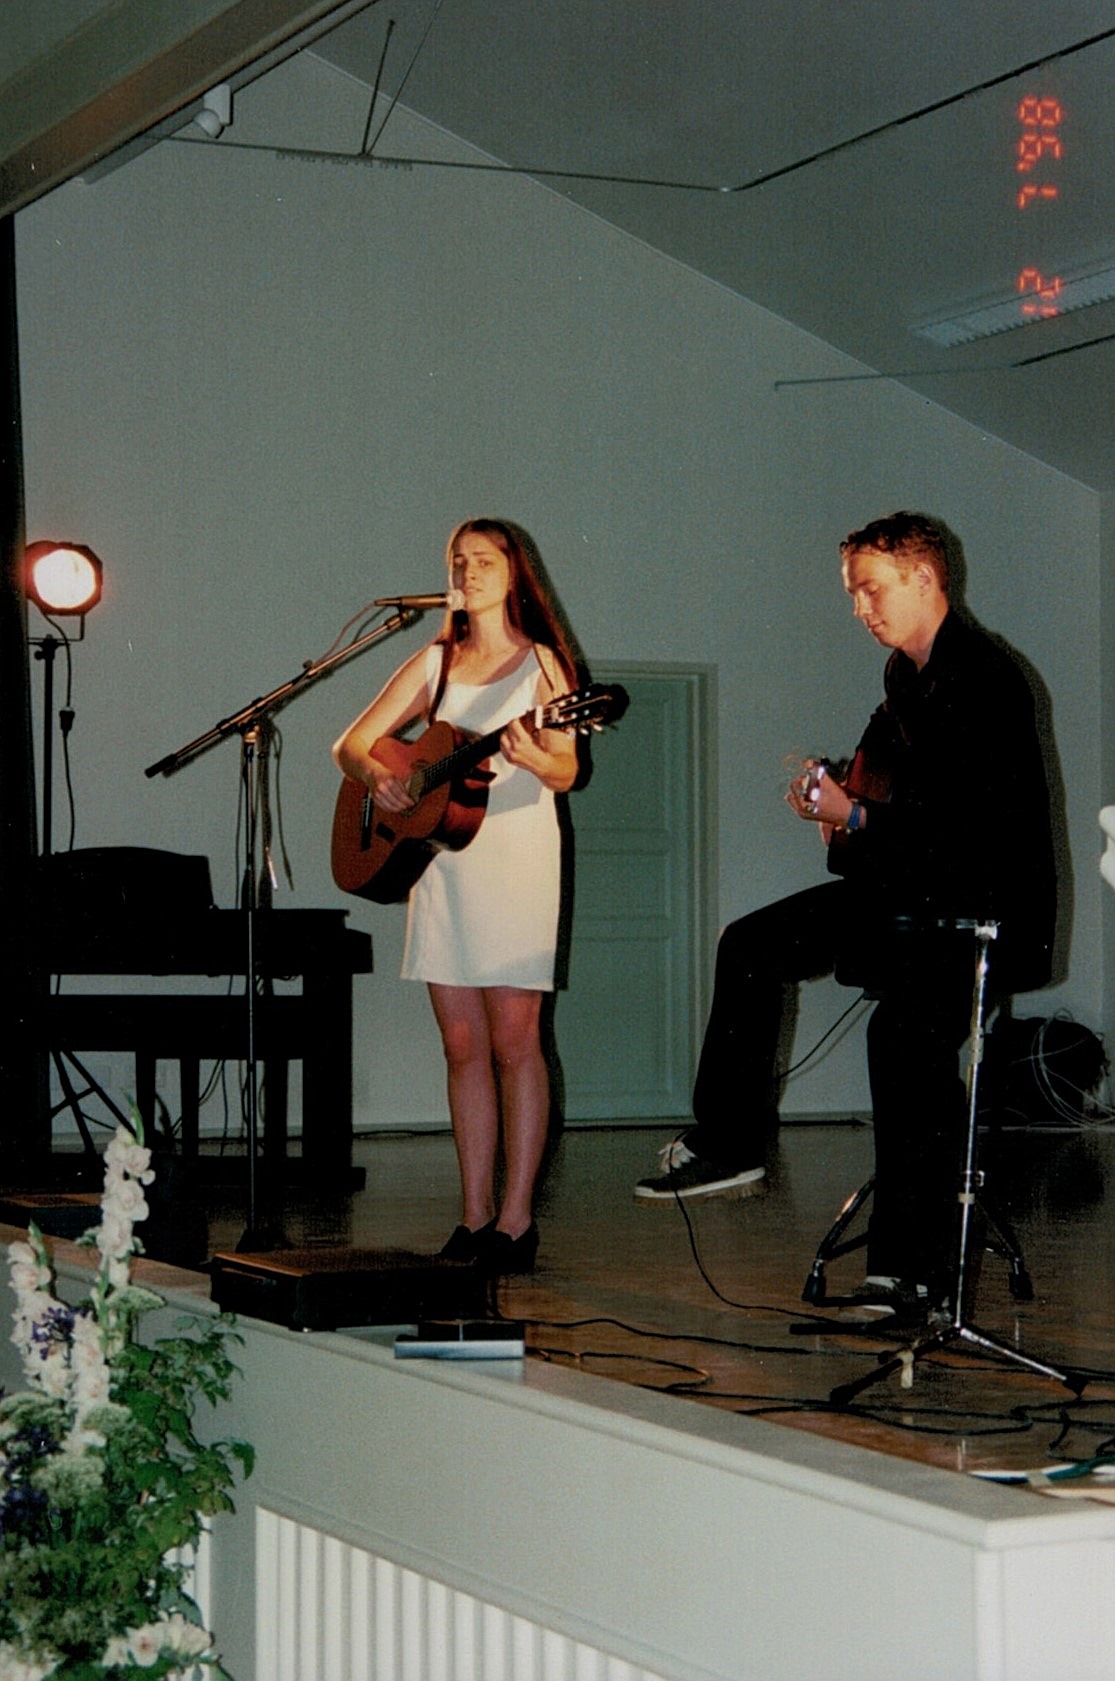 Nanna Rosengård tillsammans med Jimmy Westerlund uppträdde med sång.